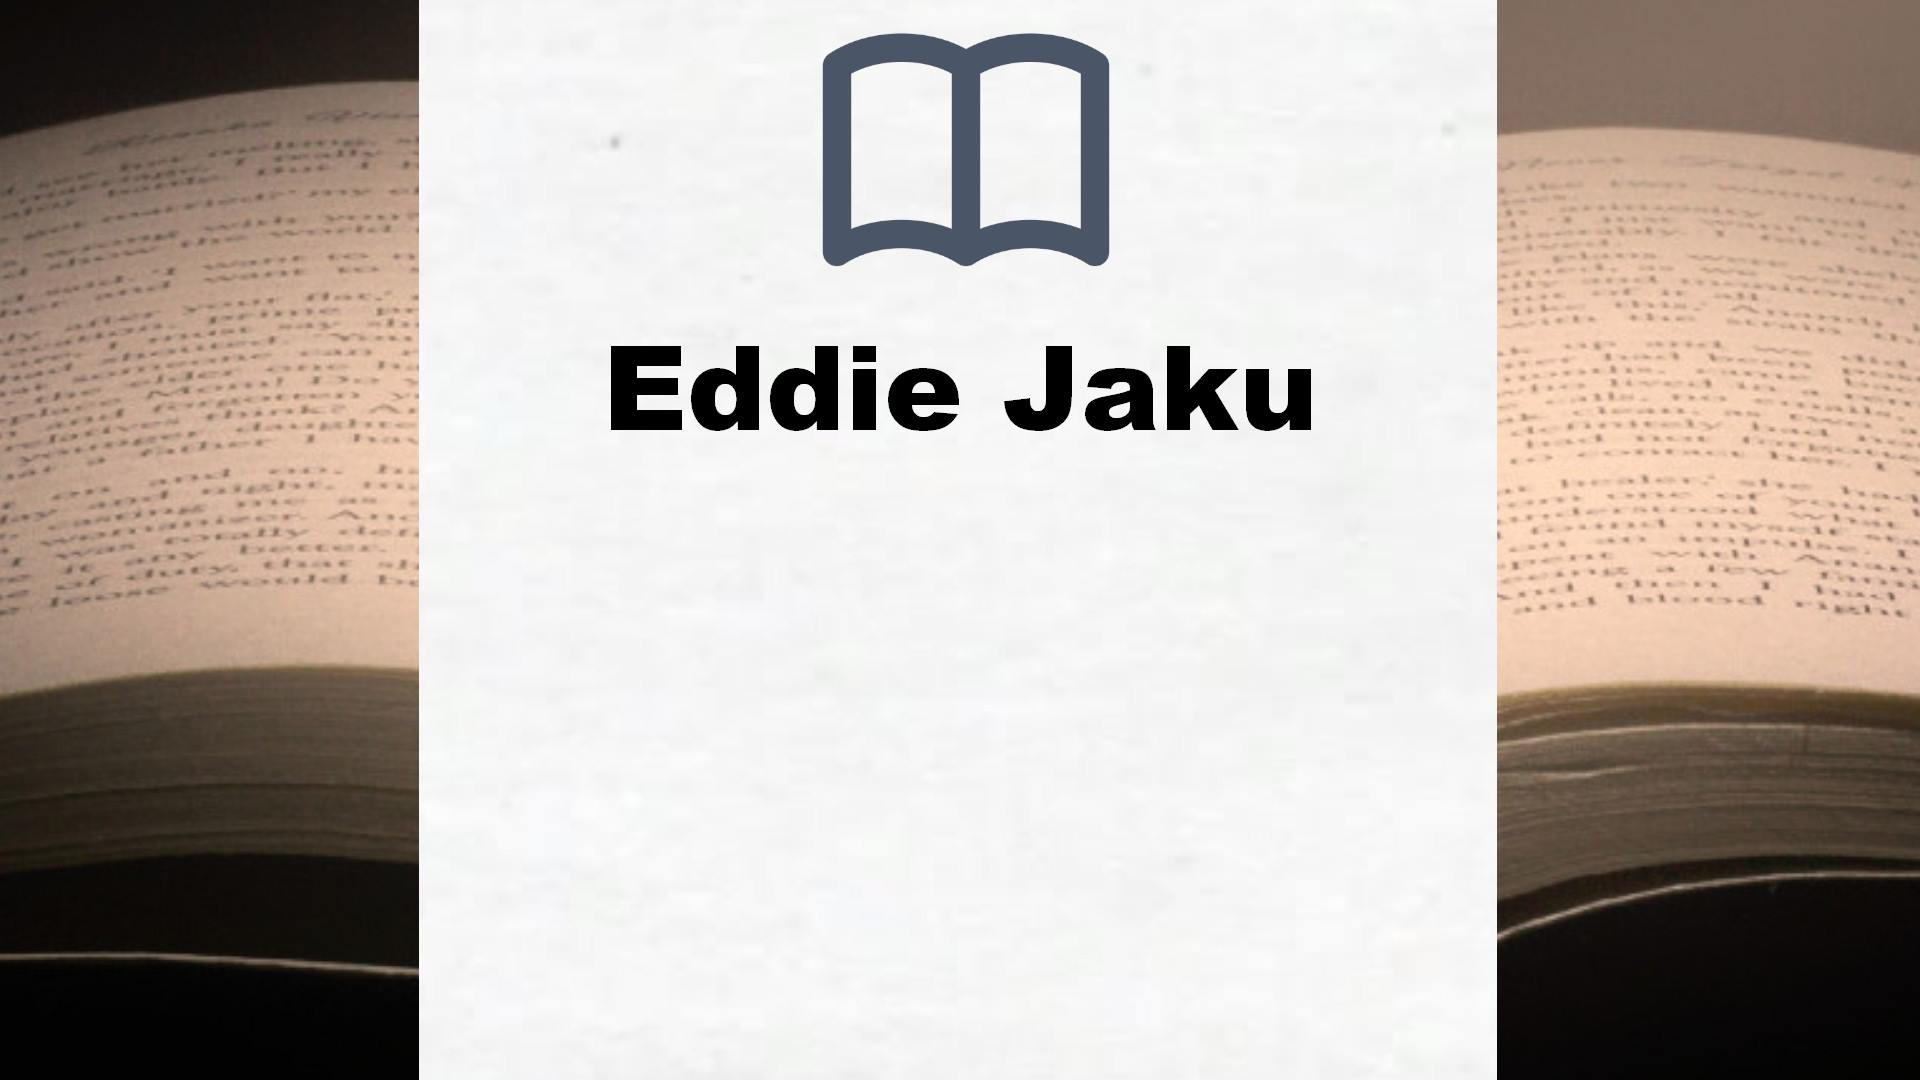 Libros Eddie Jaku